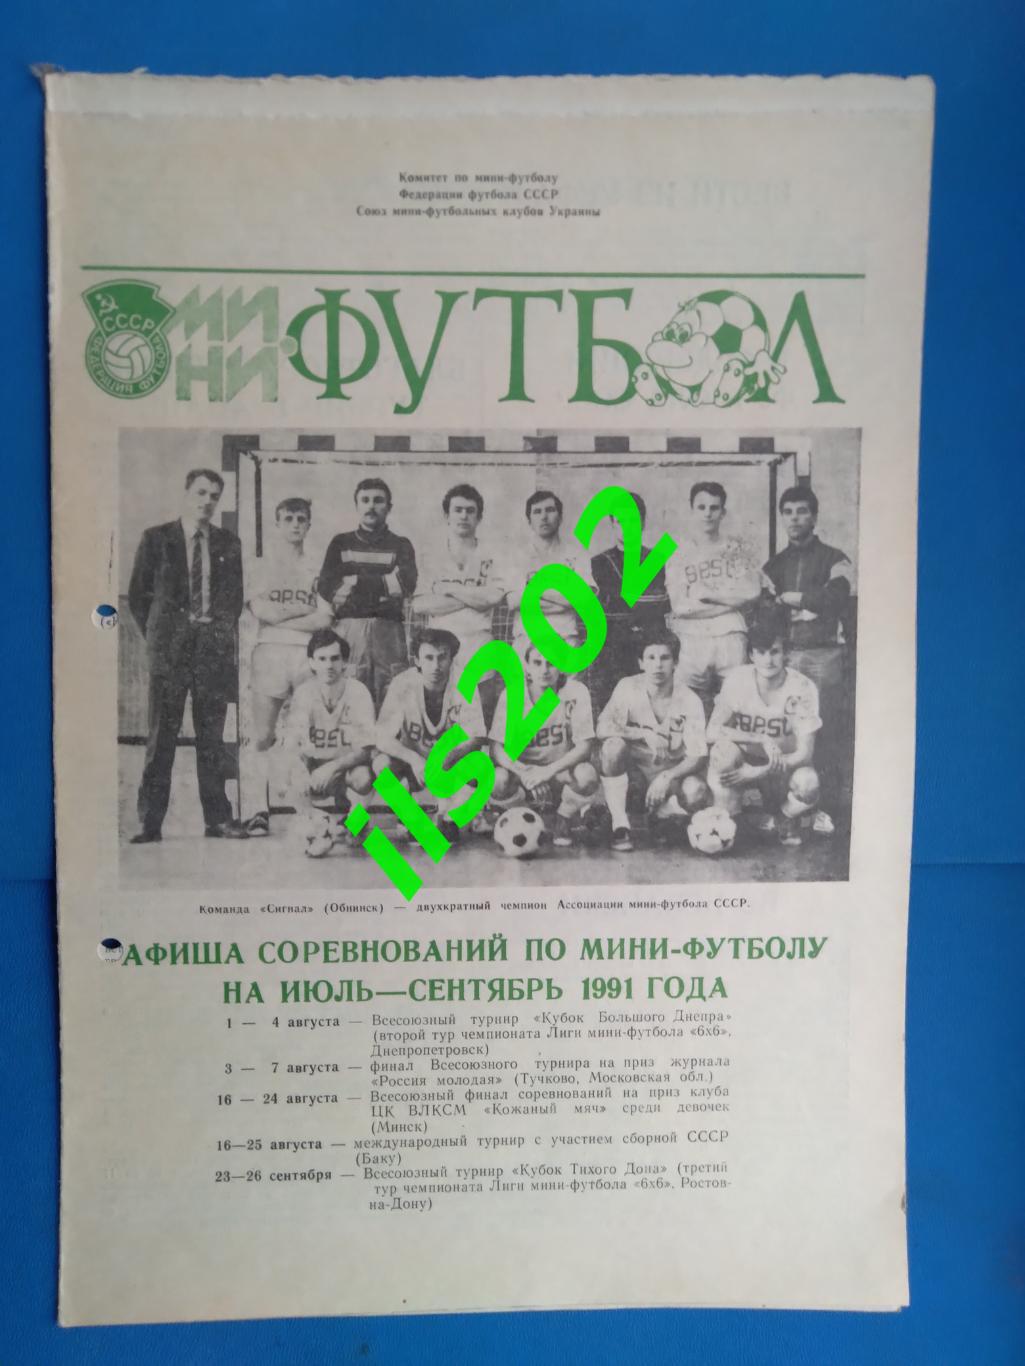 мини-футбол Днепропетровск июль-сентябрь 1991 афиша соревнований